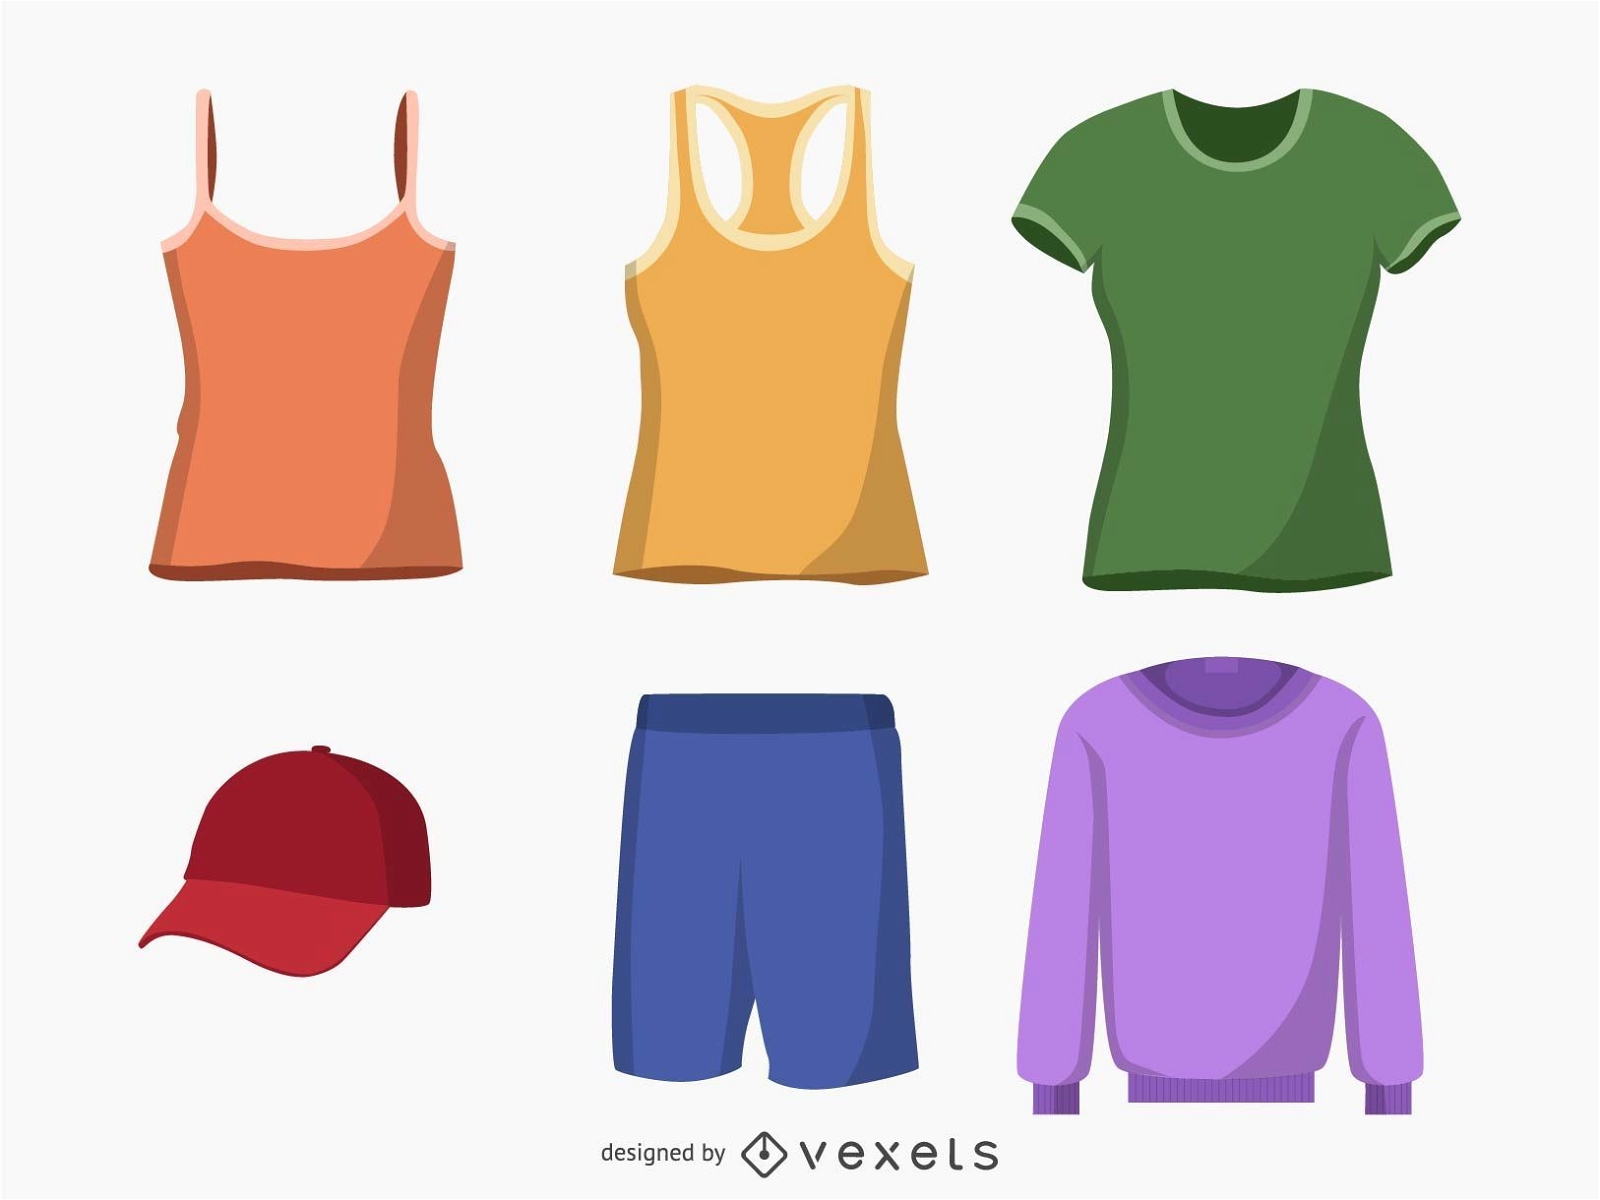 Clothing vectors